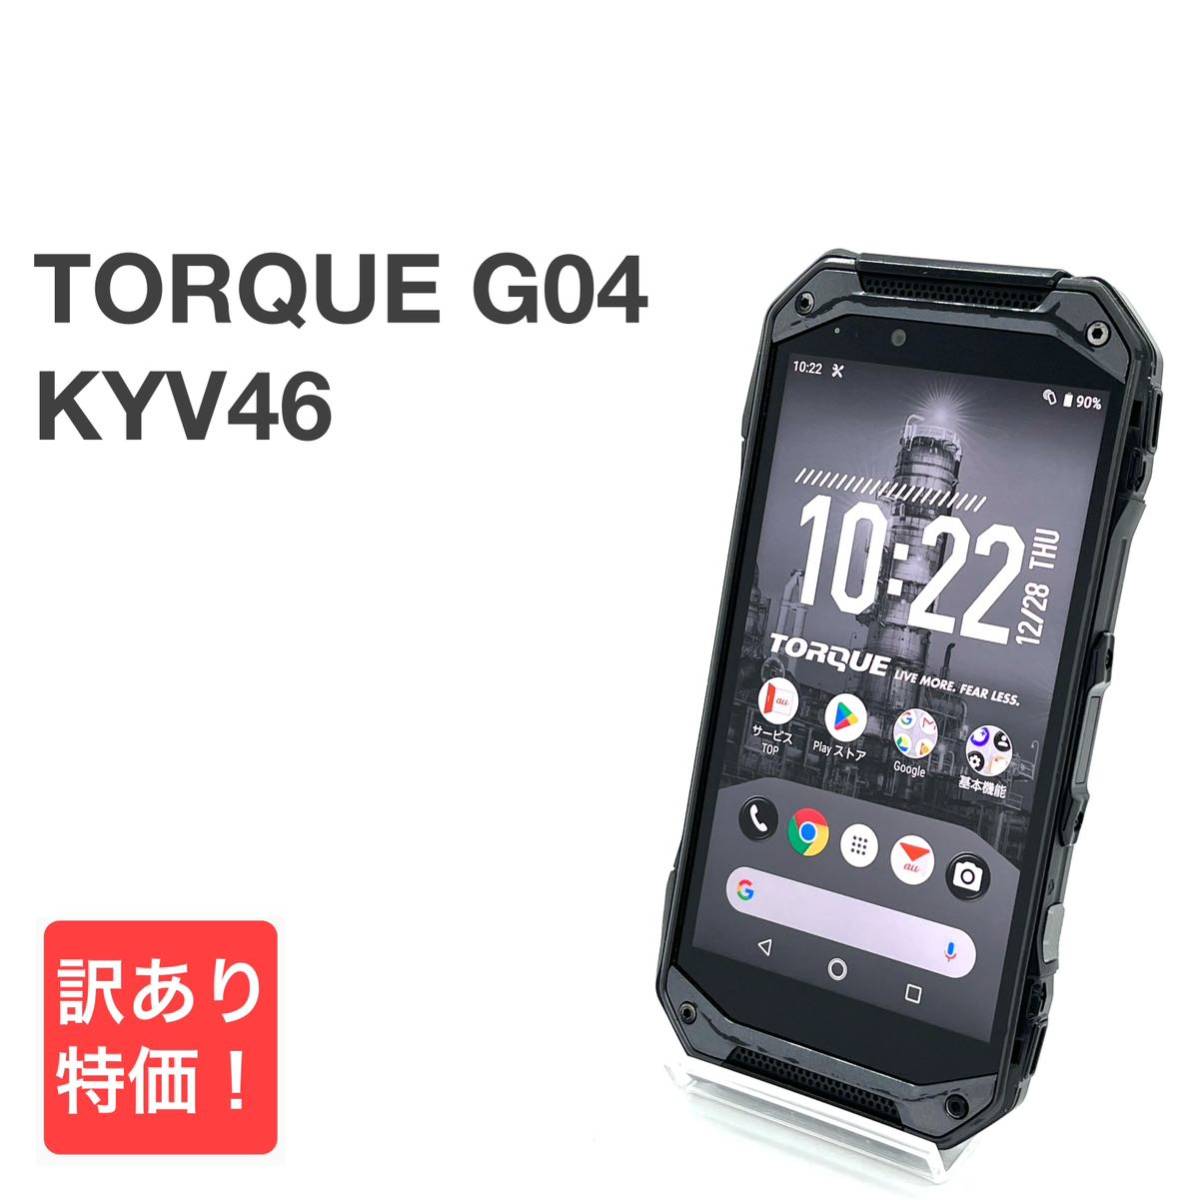 TORQUE G04 KYV46 ブラック au SIMロック解除済み 64GB Androidバージョン9 白ロム タフネス スマホ本体 送料無料 訳あり Y16MR_画像1